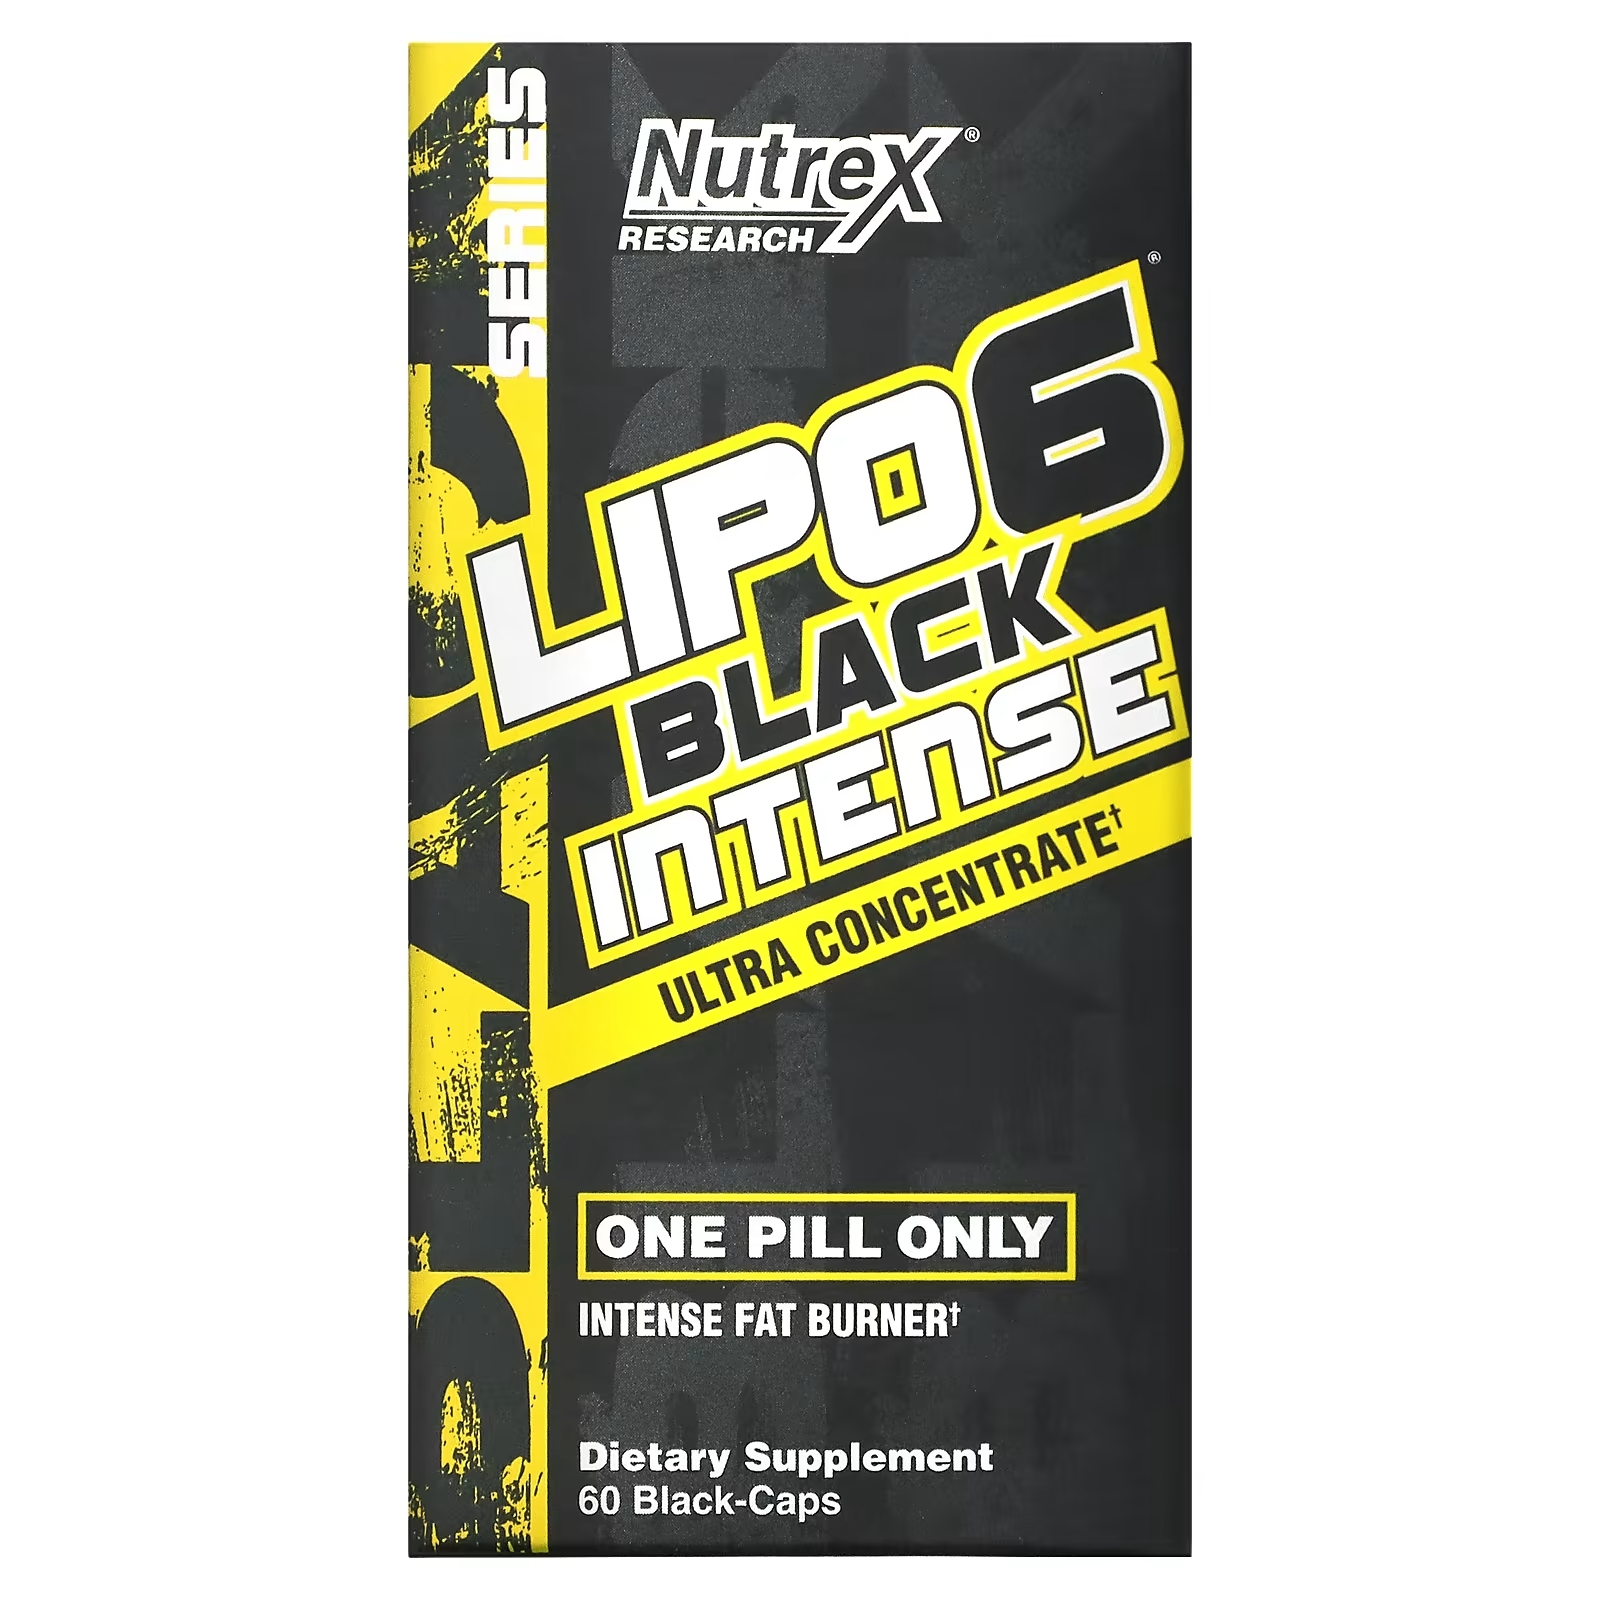 Ультраконцентрат Nutrex Research LIPO-6 Black Intense, 60 капсул nutrex research lipo 6 черный тиролин поддержка для снижения веса 60 капсул